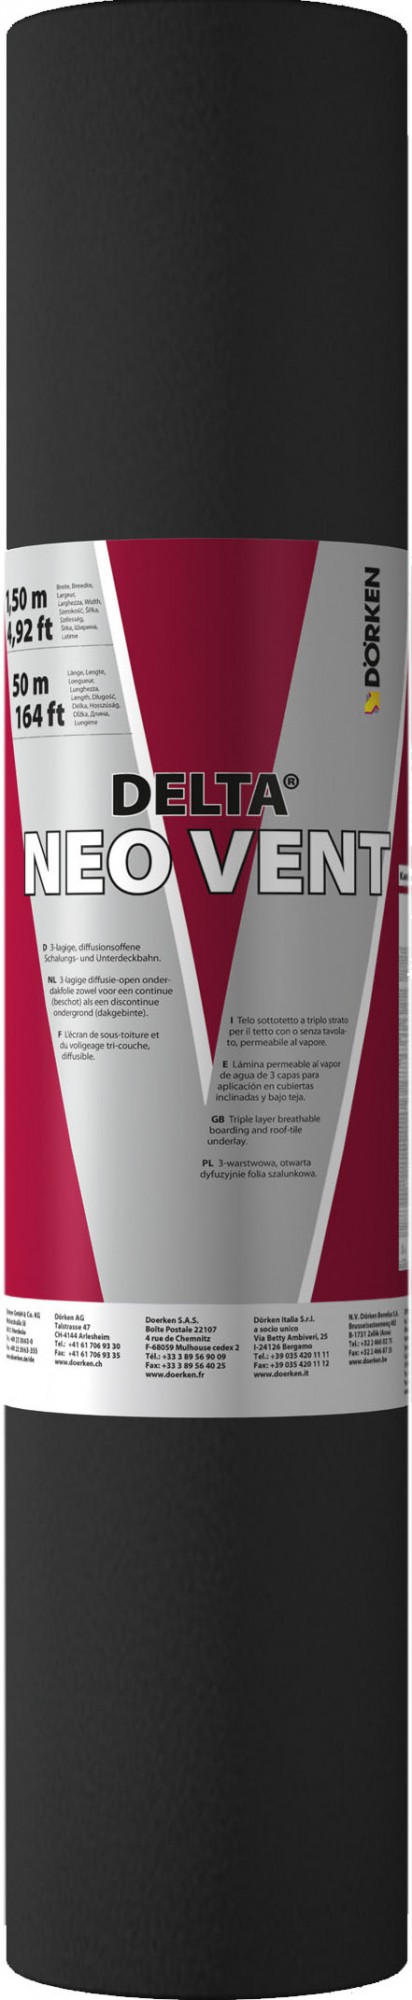 DELTA-NEO VENT универсальная диффузионная мембрана (Дельта НЕО ВЕНТ)